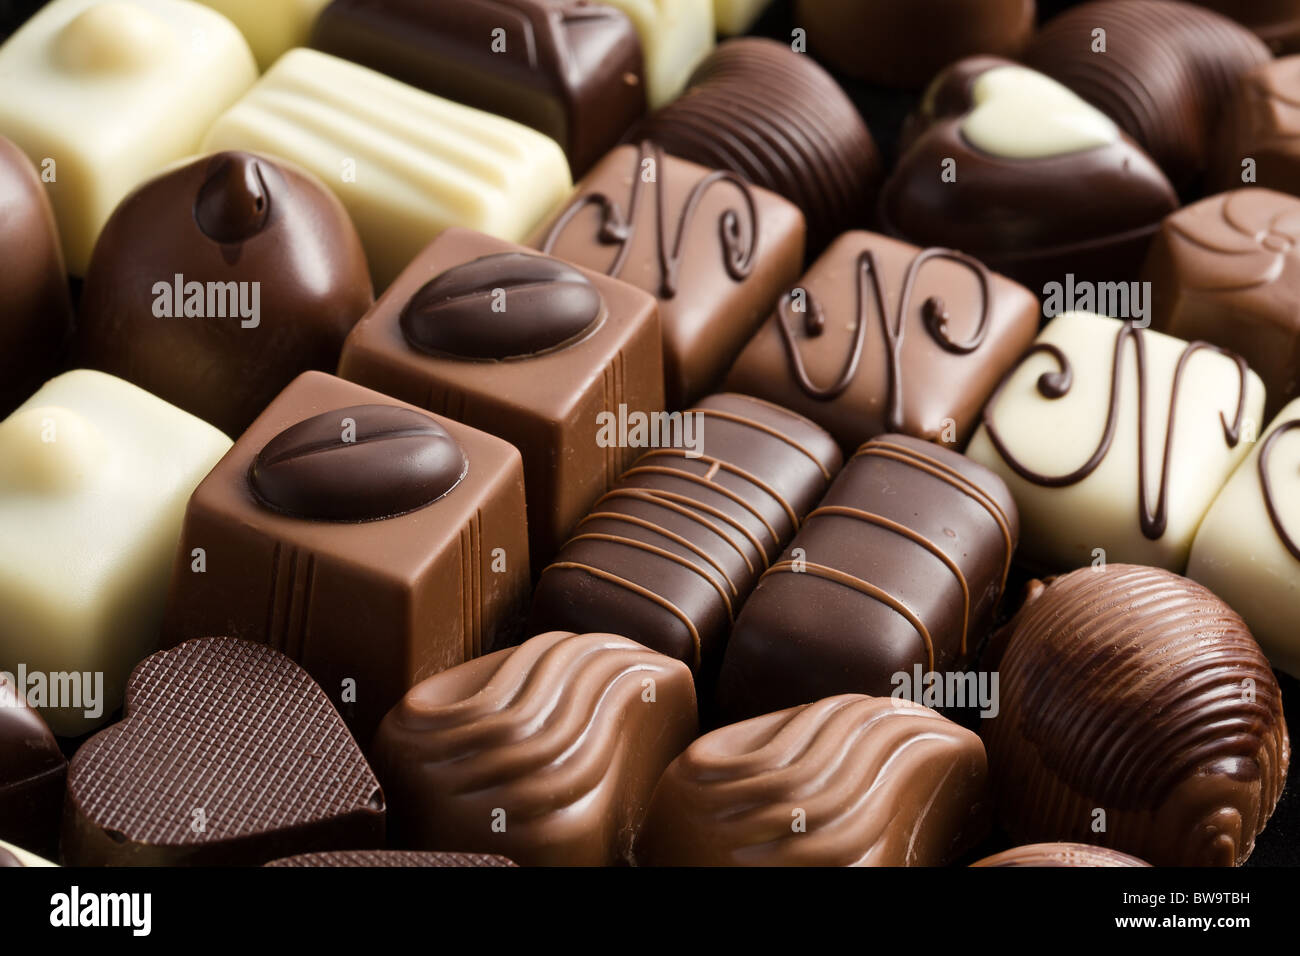 Chocolat pralines divers Banque D'Images